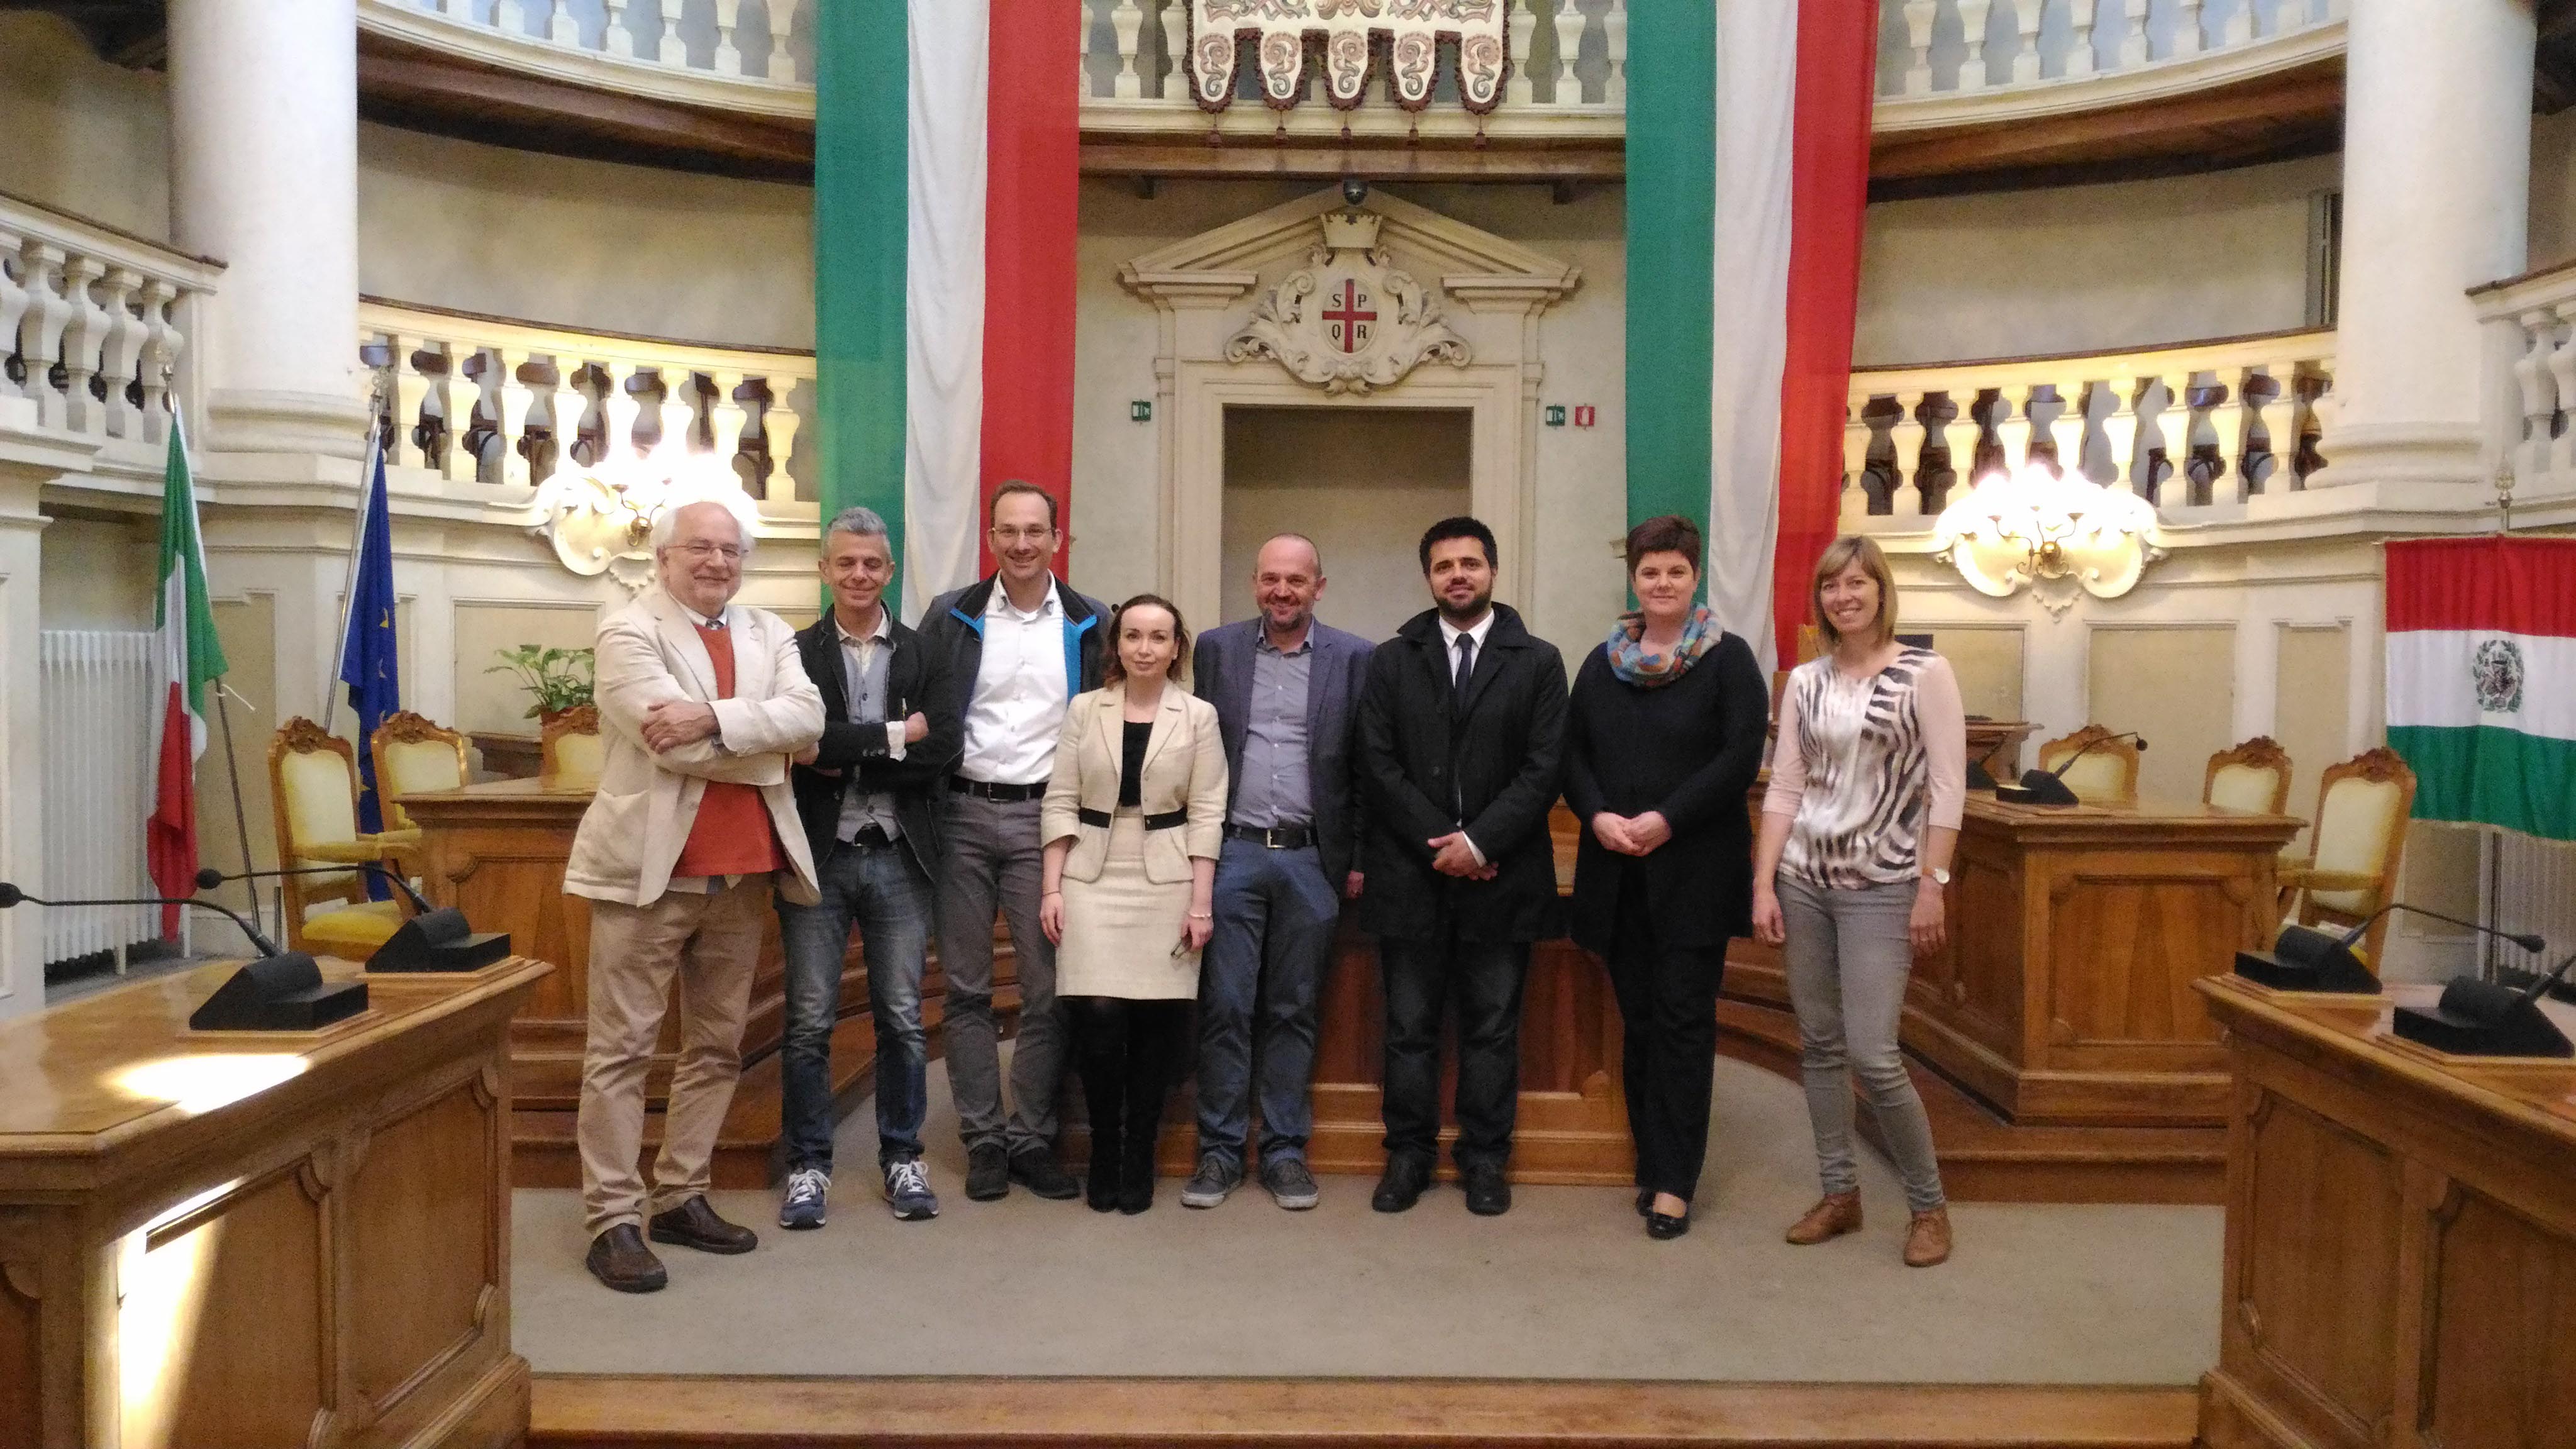 Peer review in Reggio Emilia